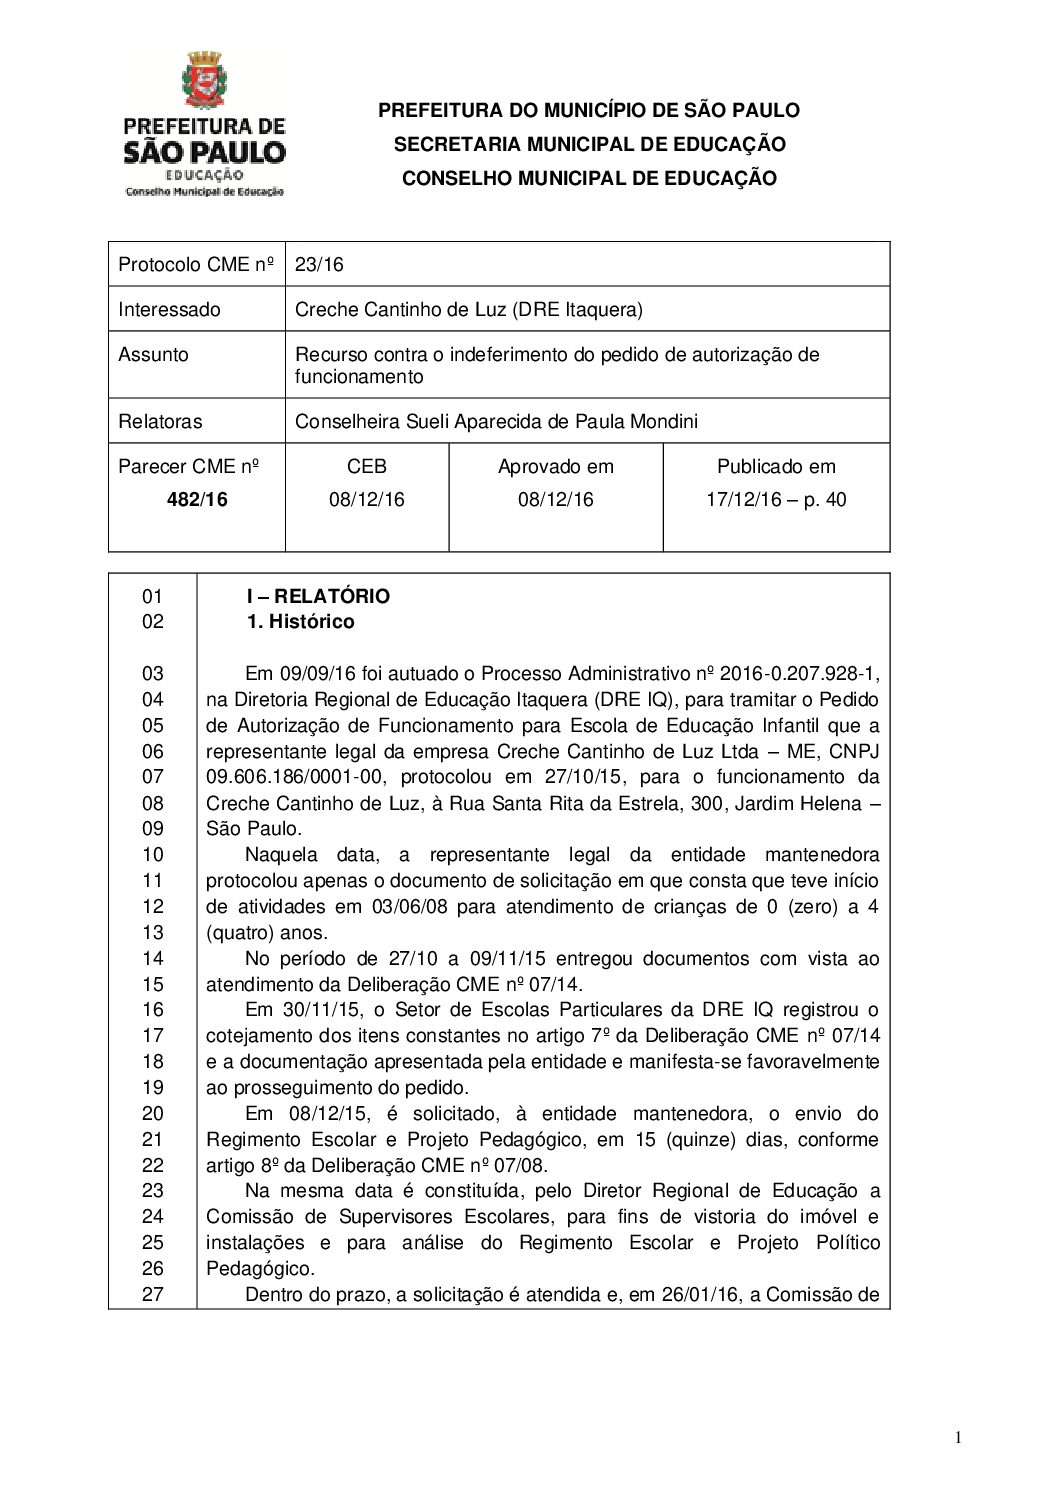 Parecer CME nº 482/2016 - Creche Cantinho de Luz (DRE Itaquera) - Recurso contra o indeferimento do pedido de autorização de funcionamento 